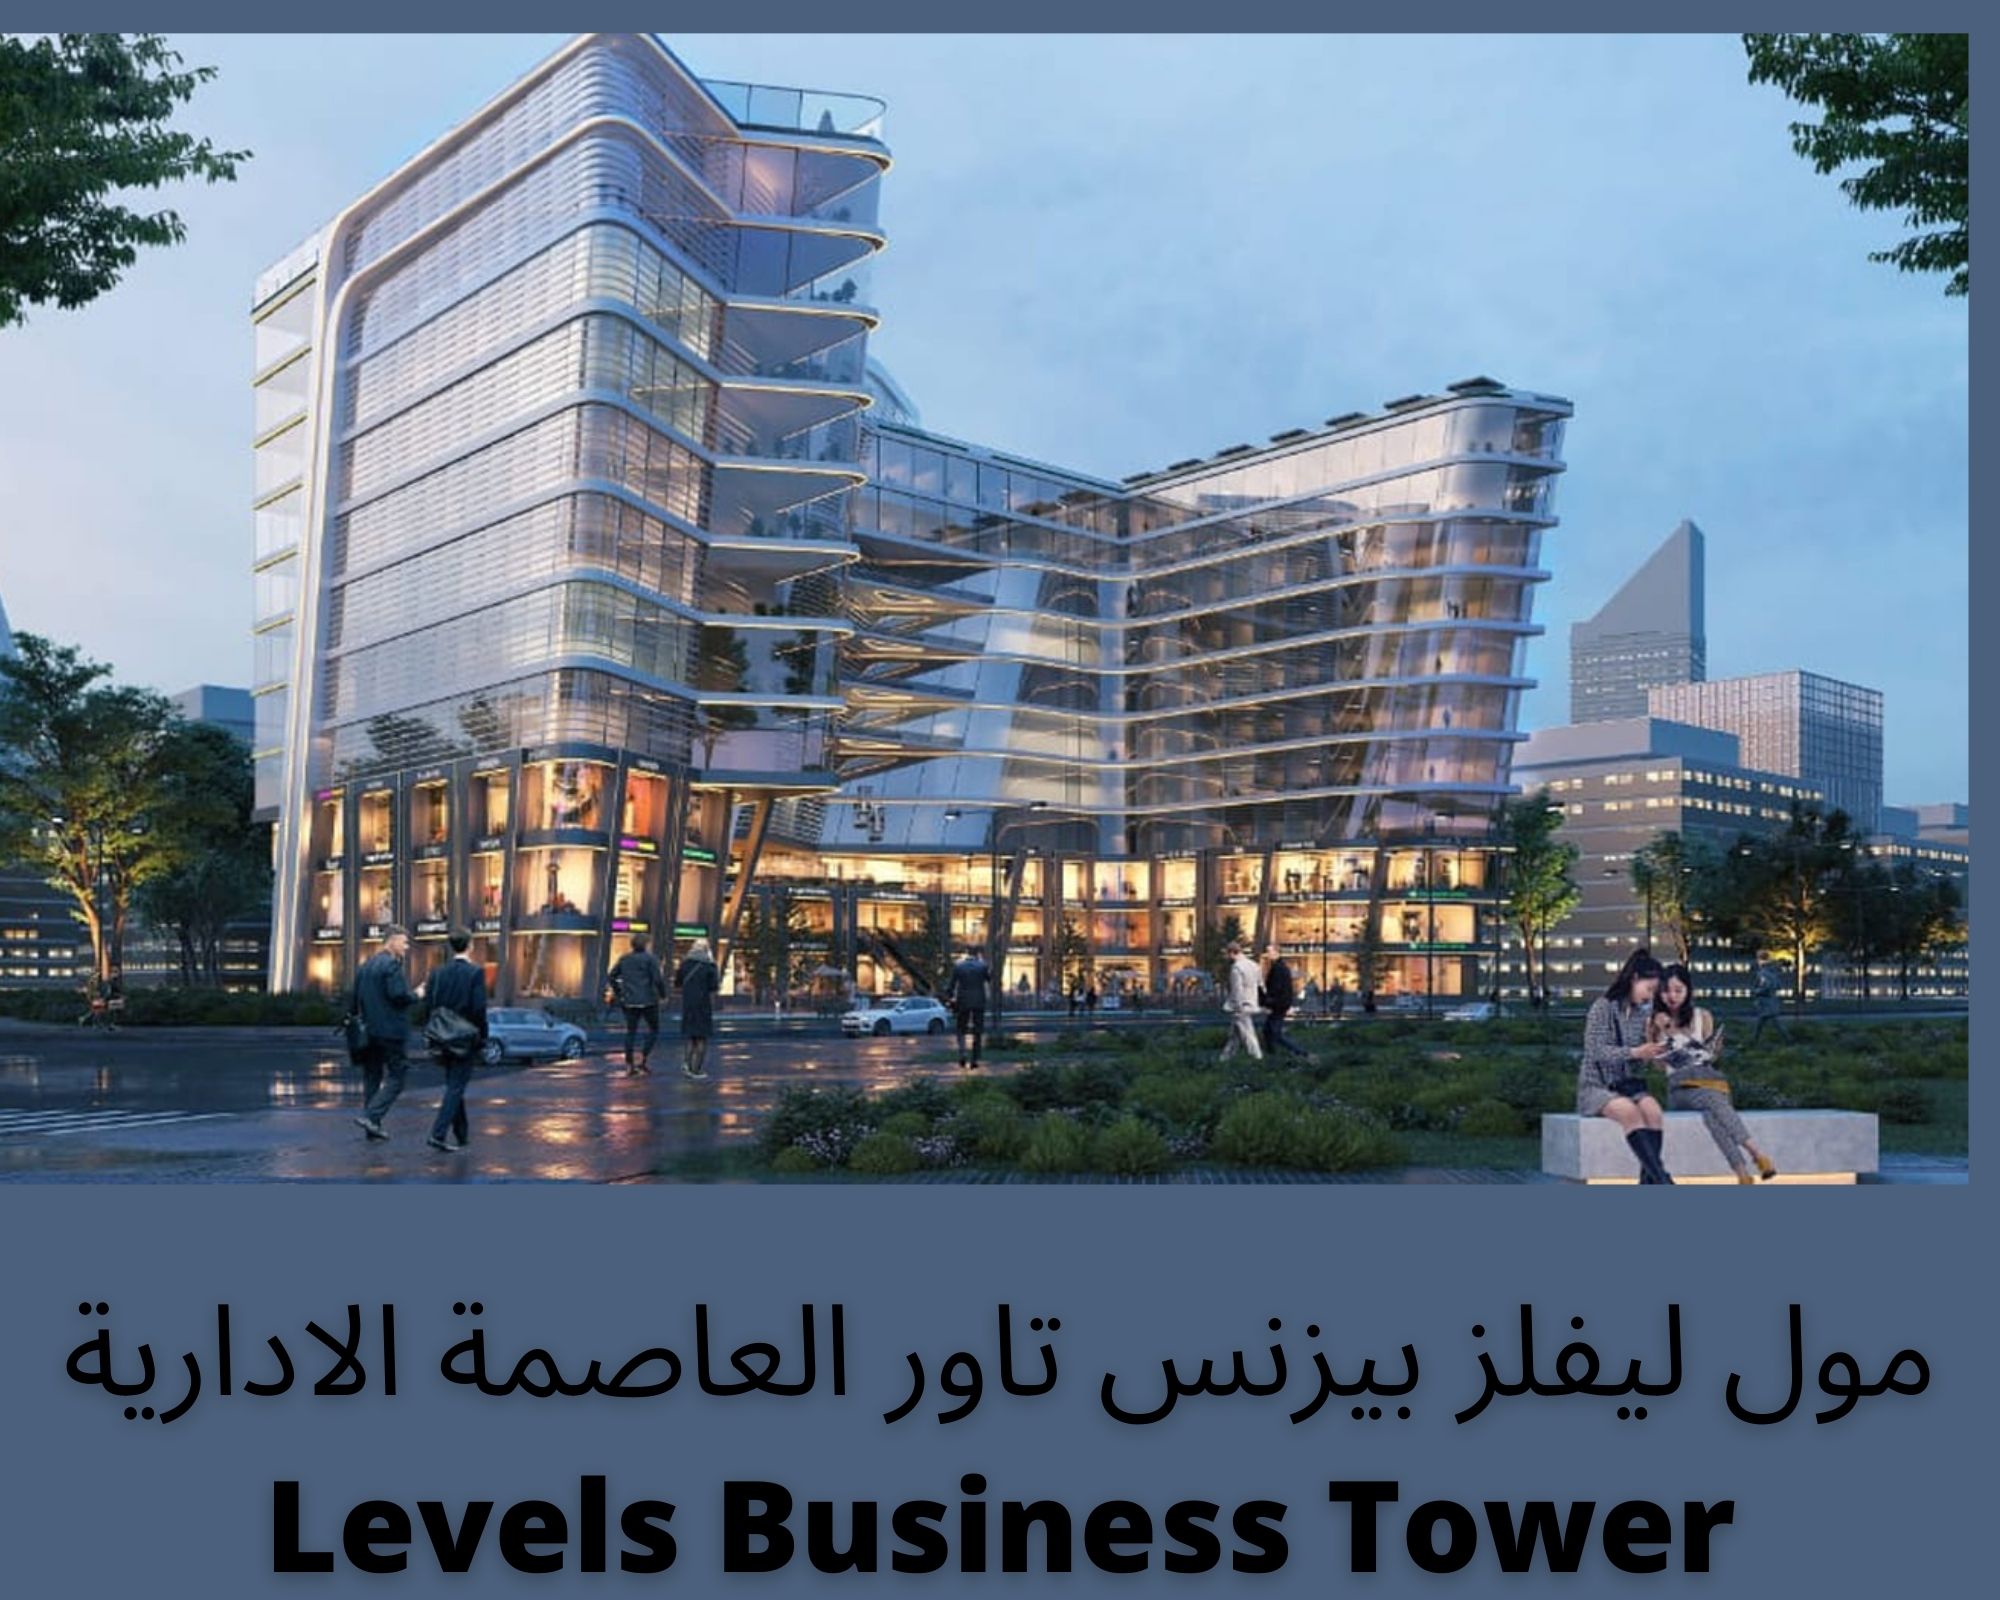 مول ليفلز بيزنس تاور العاصمة الادارية Levels Business Tower 